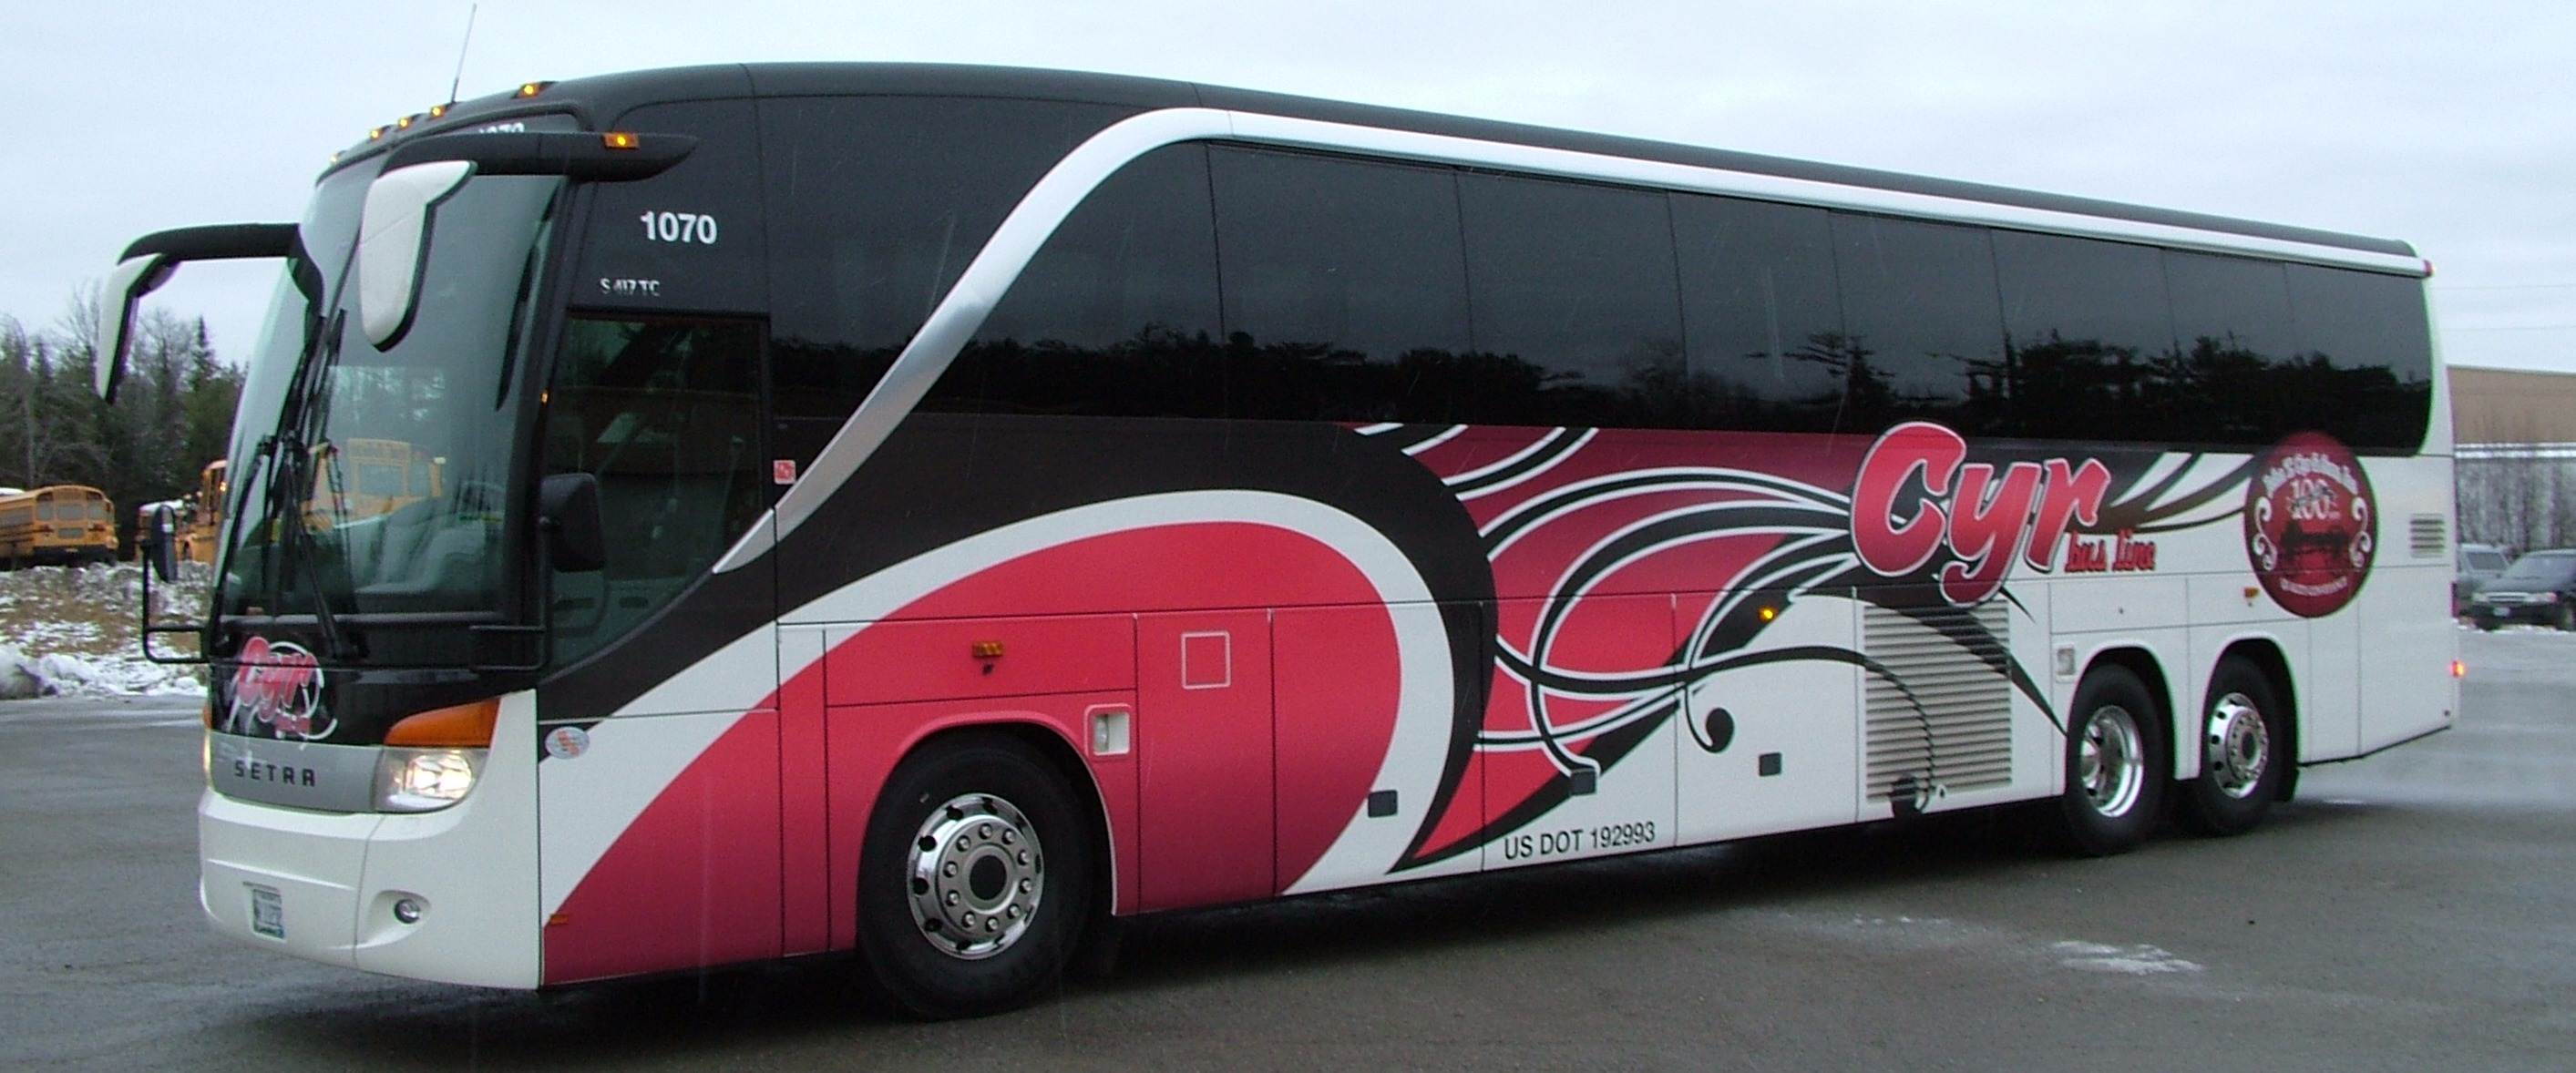 CYR Bus Line: Maine: Charter Tours & Bus Services